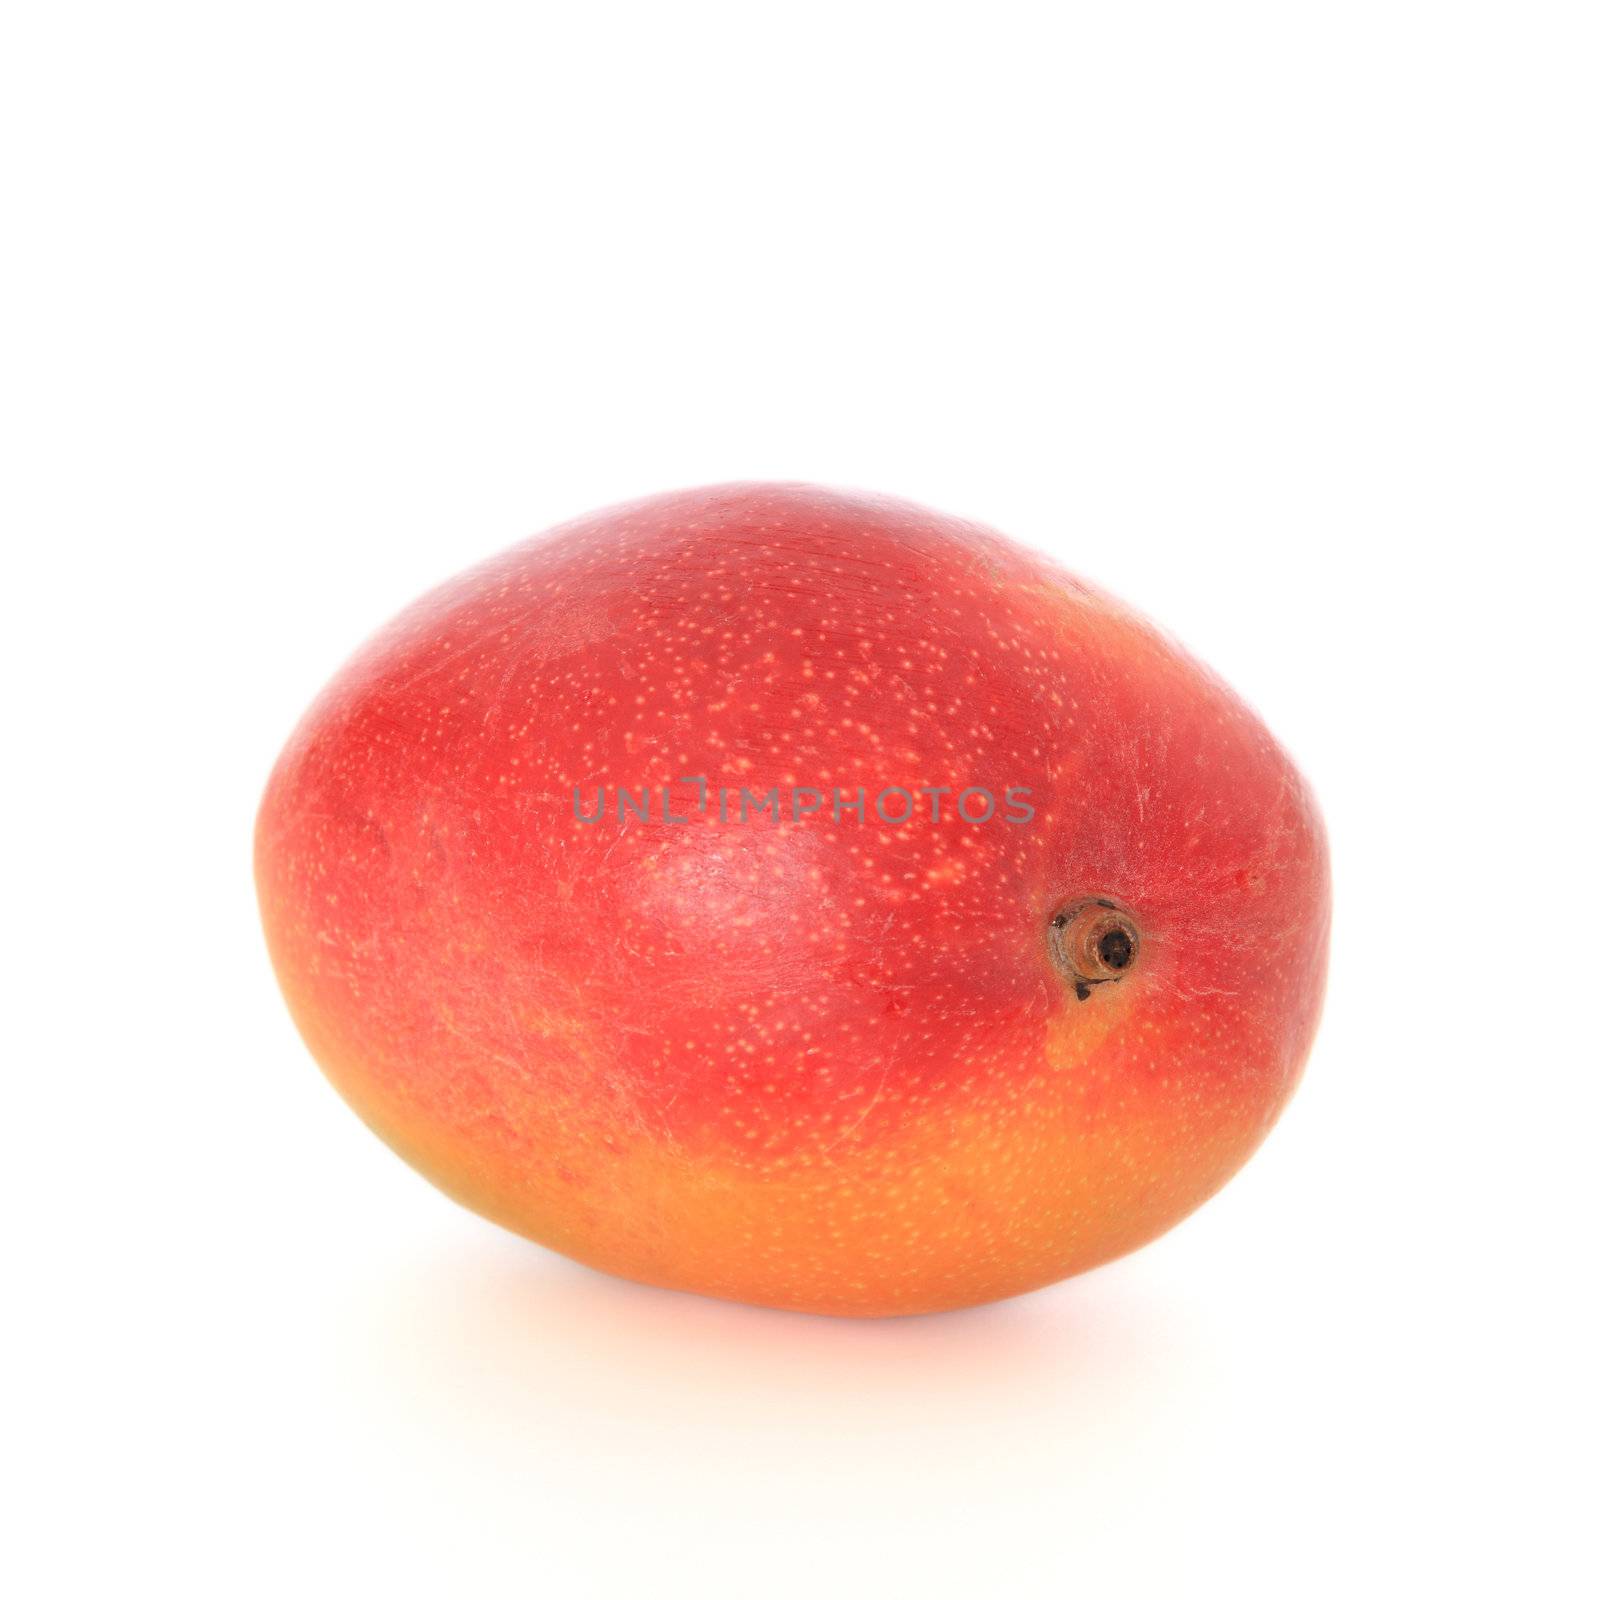 Mango by kaarsten